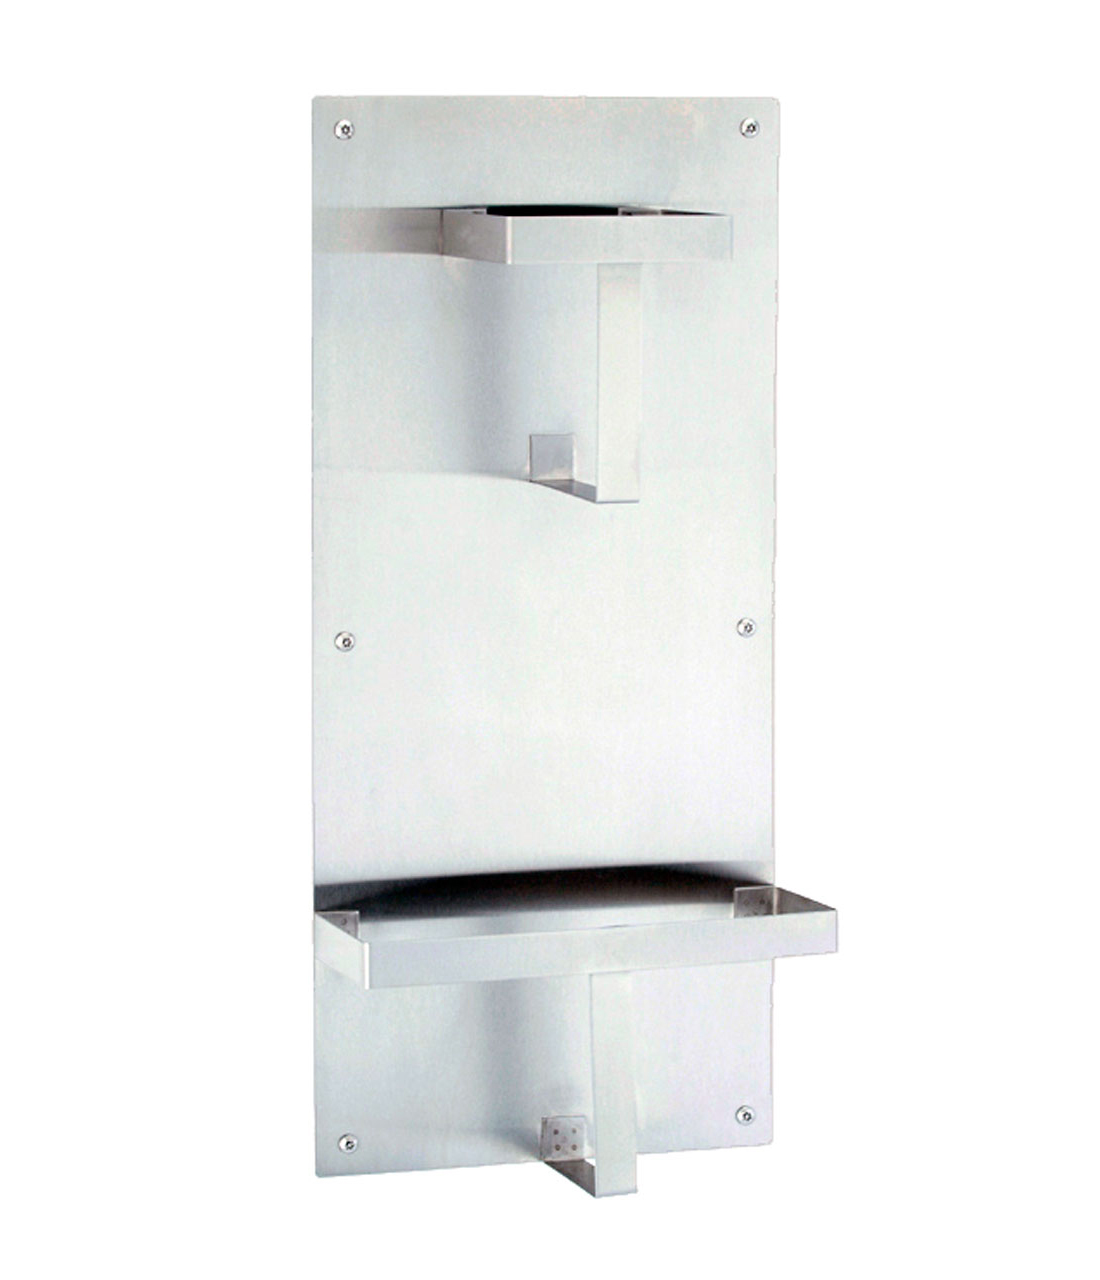 Surface-Mounted Bed Pan Rack - (Model #: bp-1) Image